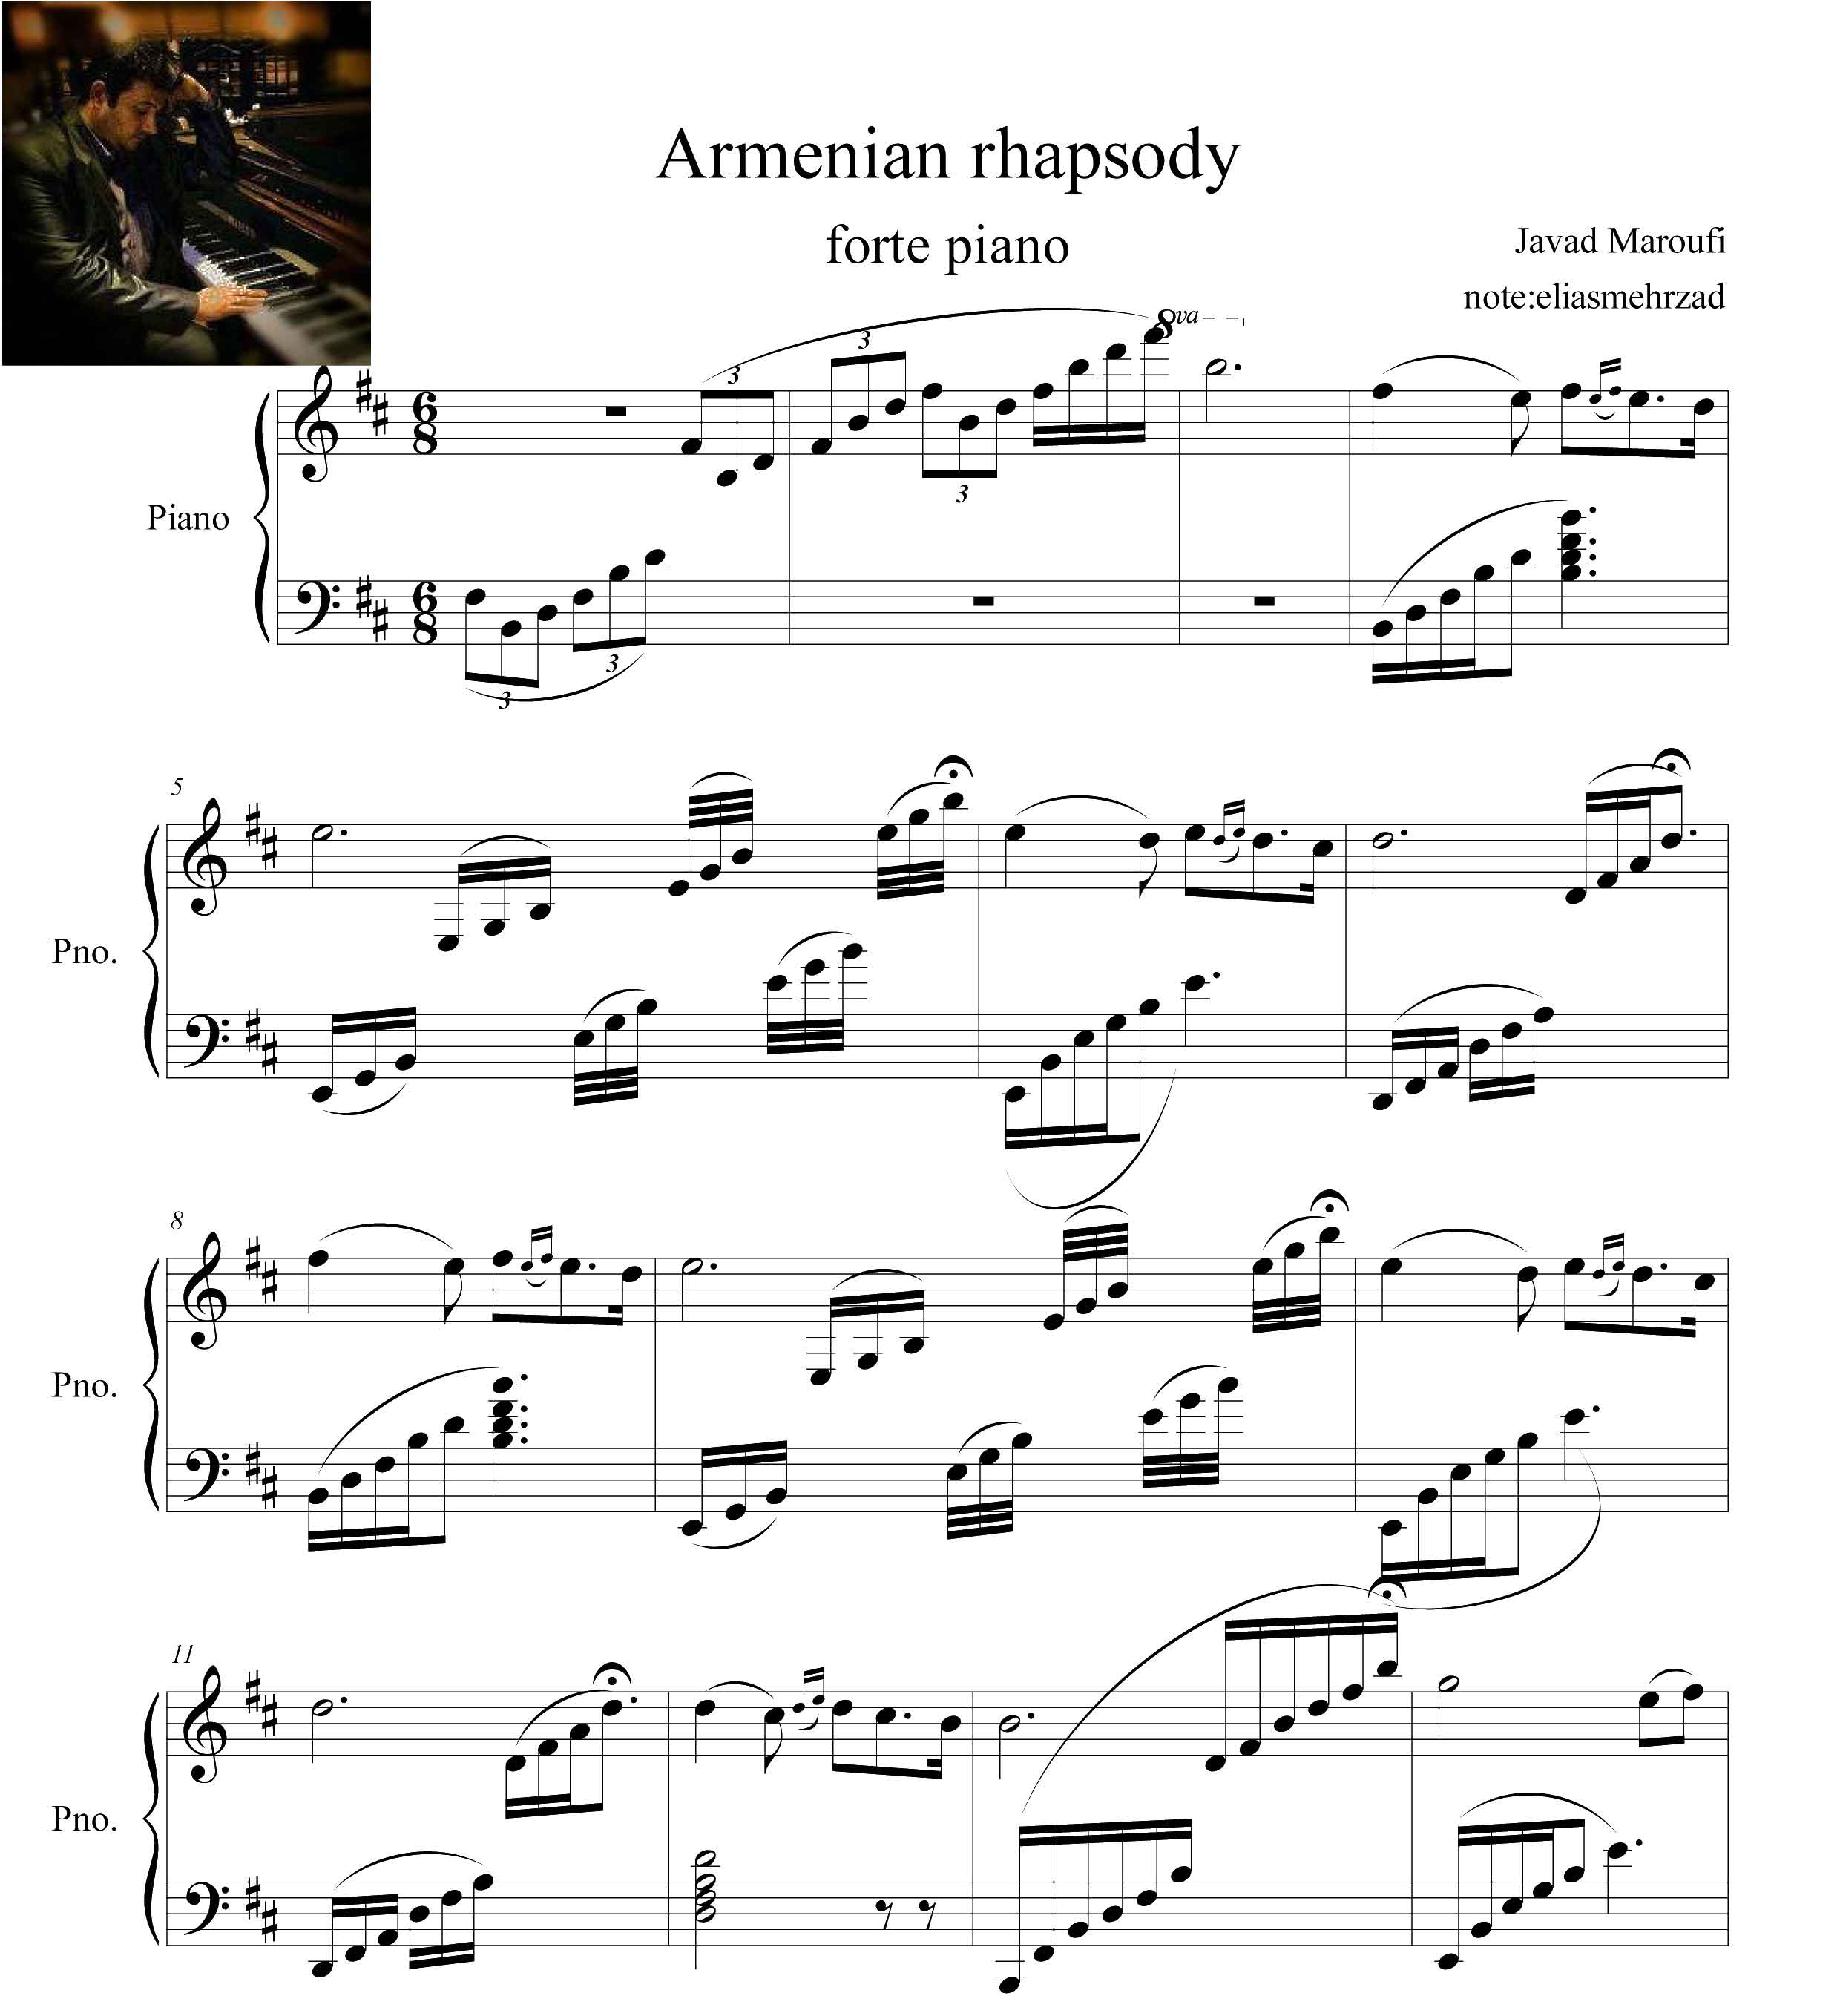 نت پیانوی راپسودی ارمنی جواد معروفی